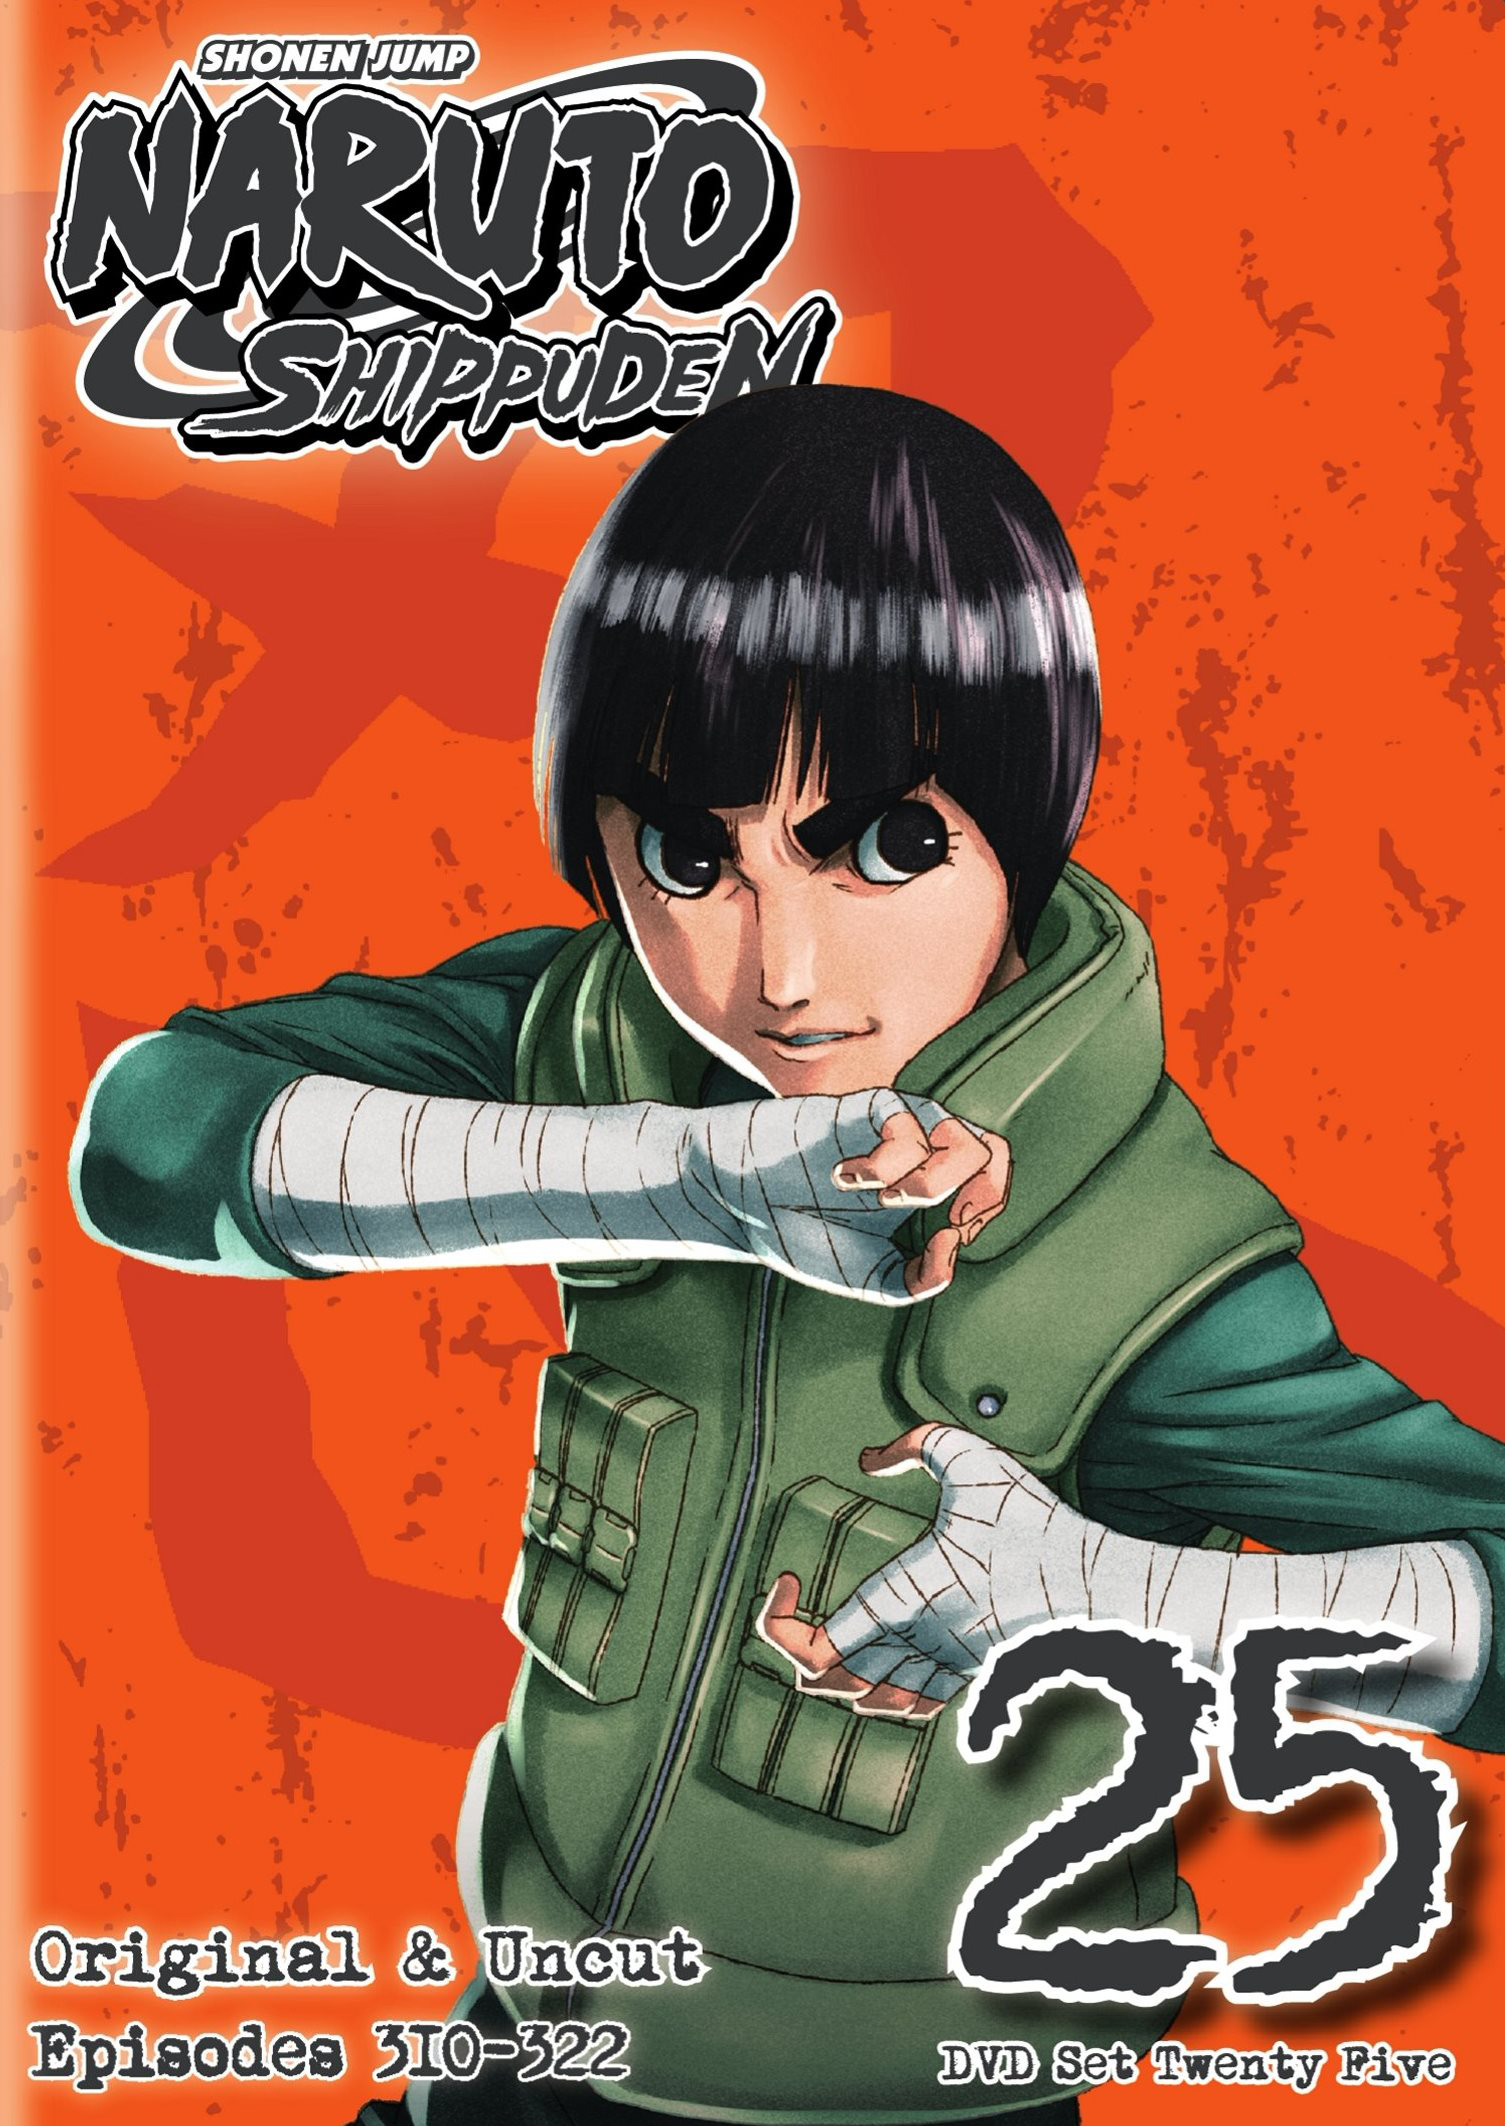 Naruto Shippuden Box Set 36 (DVD) 